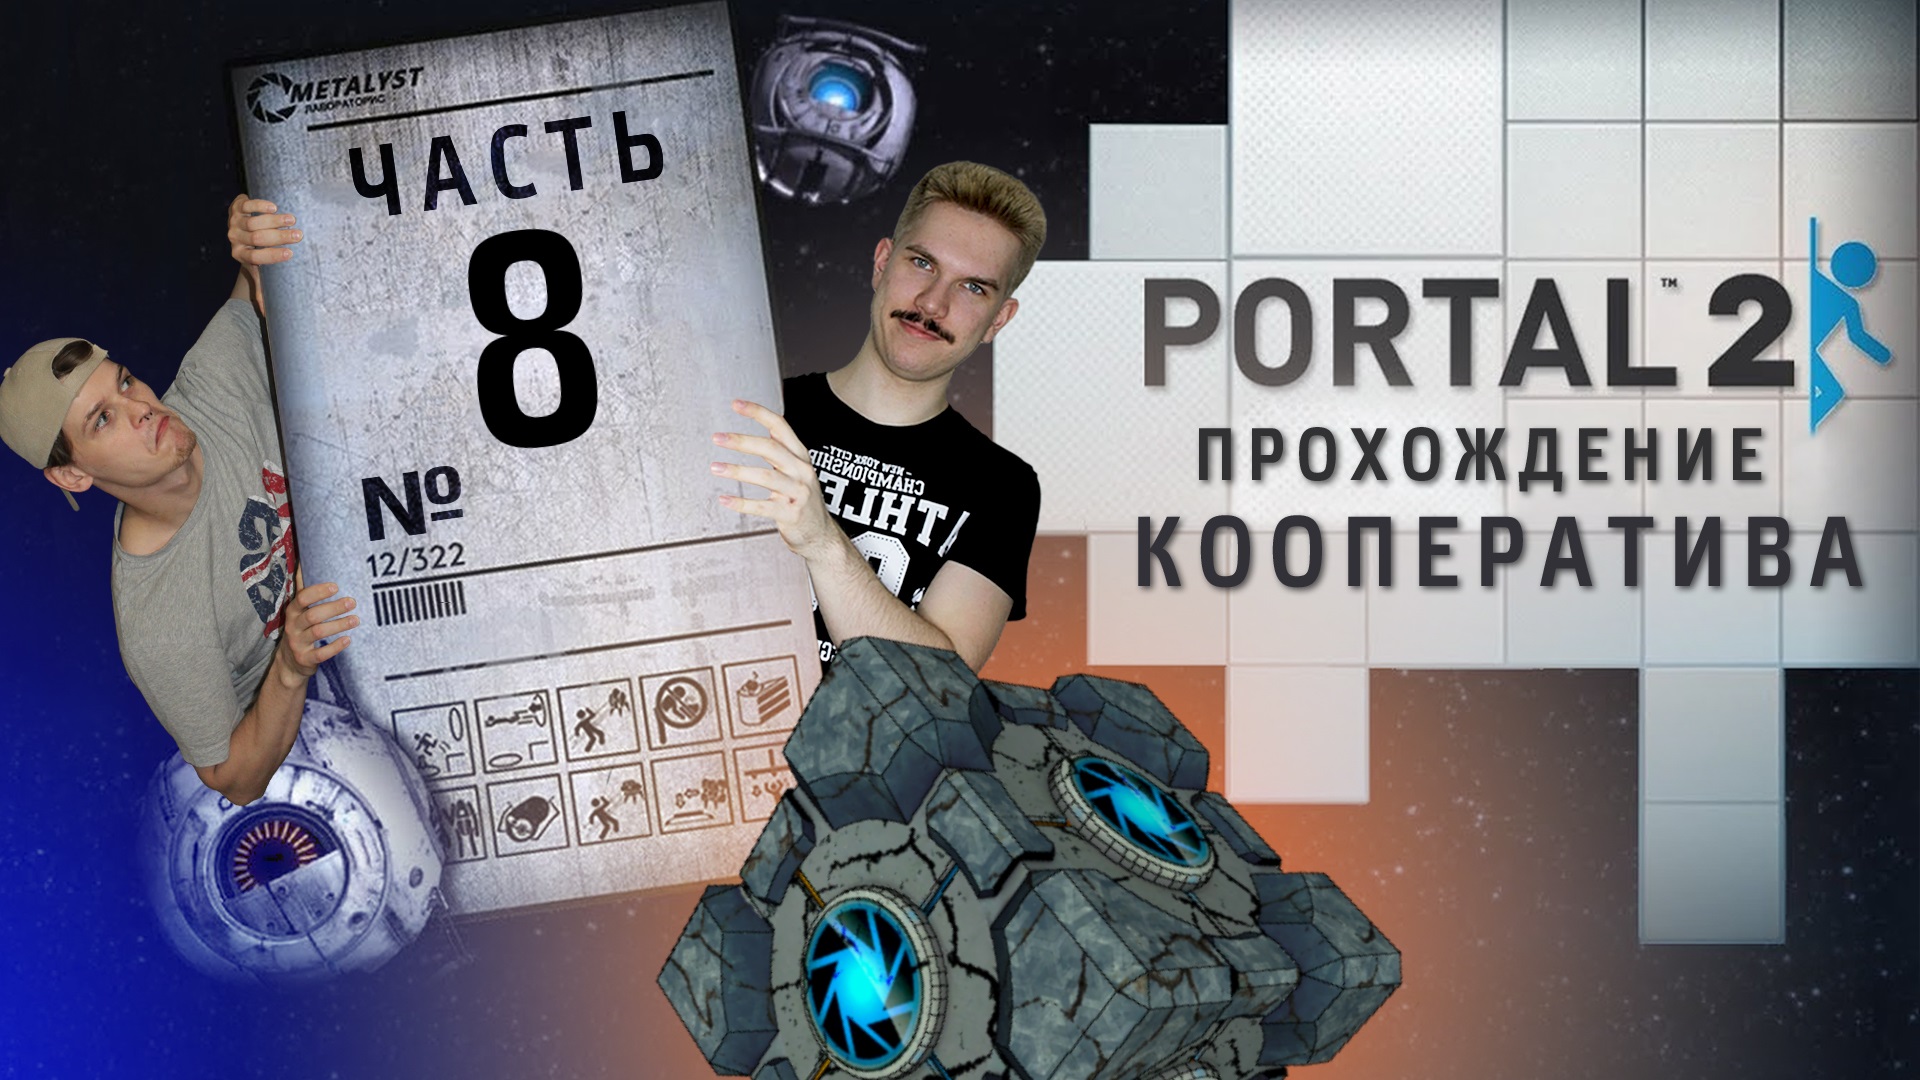 Portal 2 кооператив как пройти фото 8